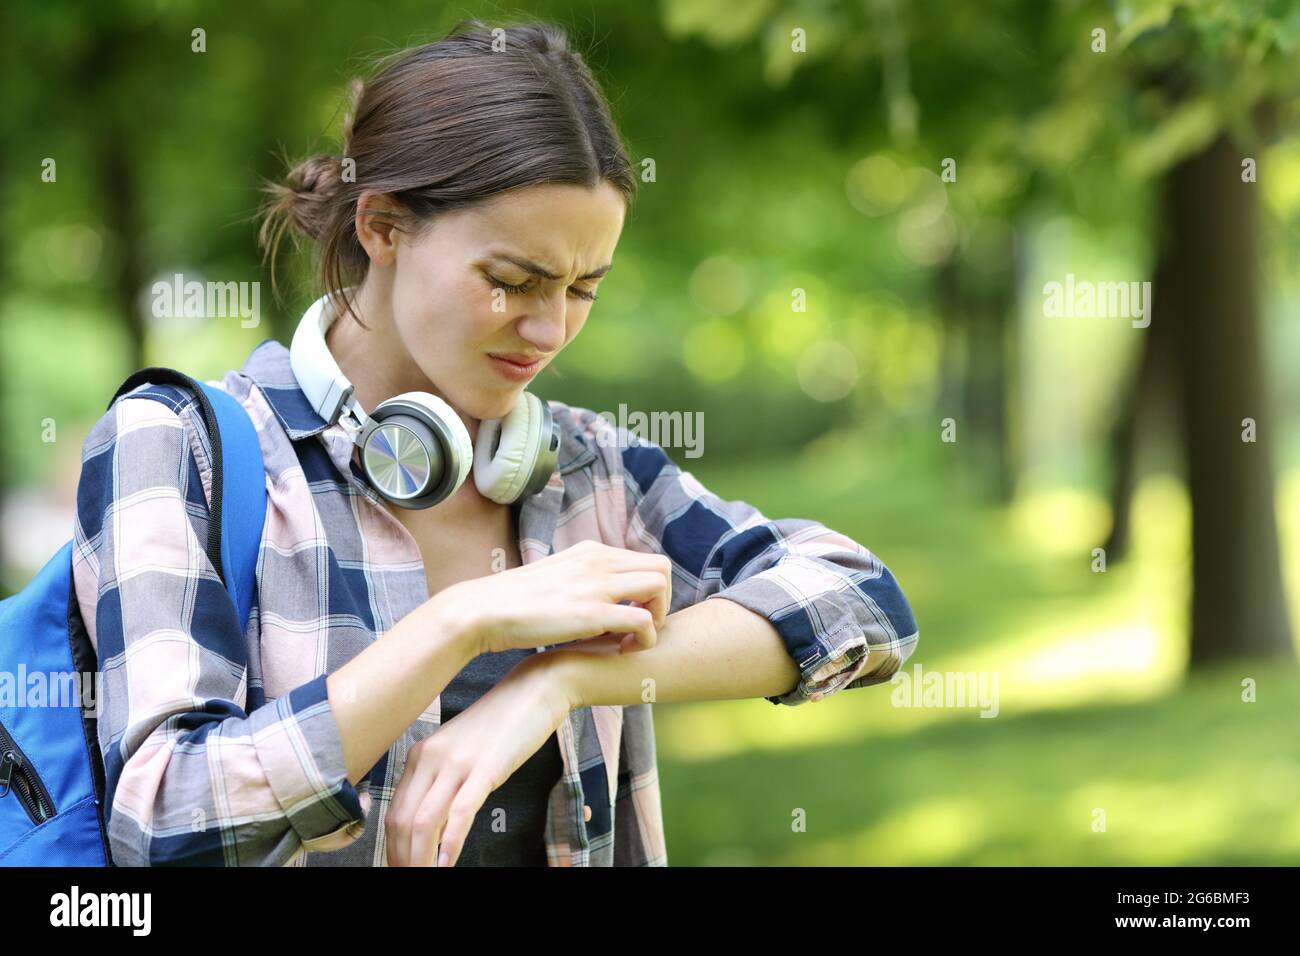 Un étudiant allergique se grattant le bras dans un parc ou un campus Banque D'Images